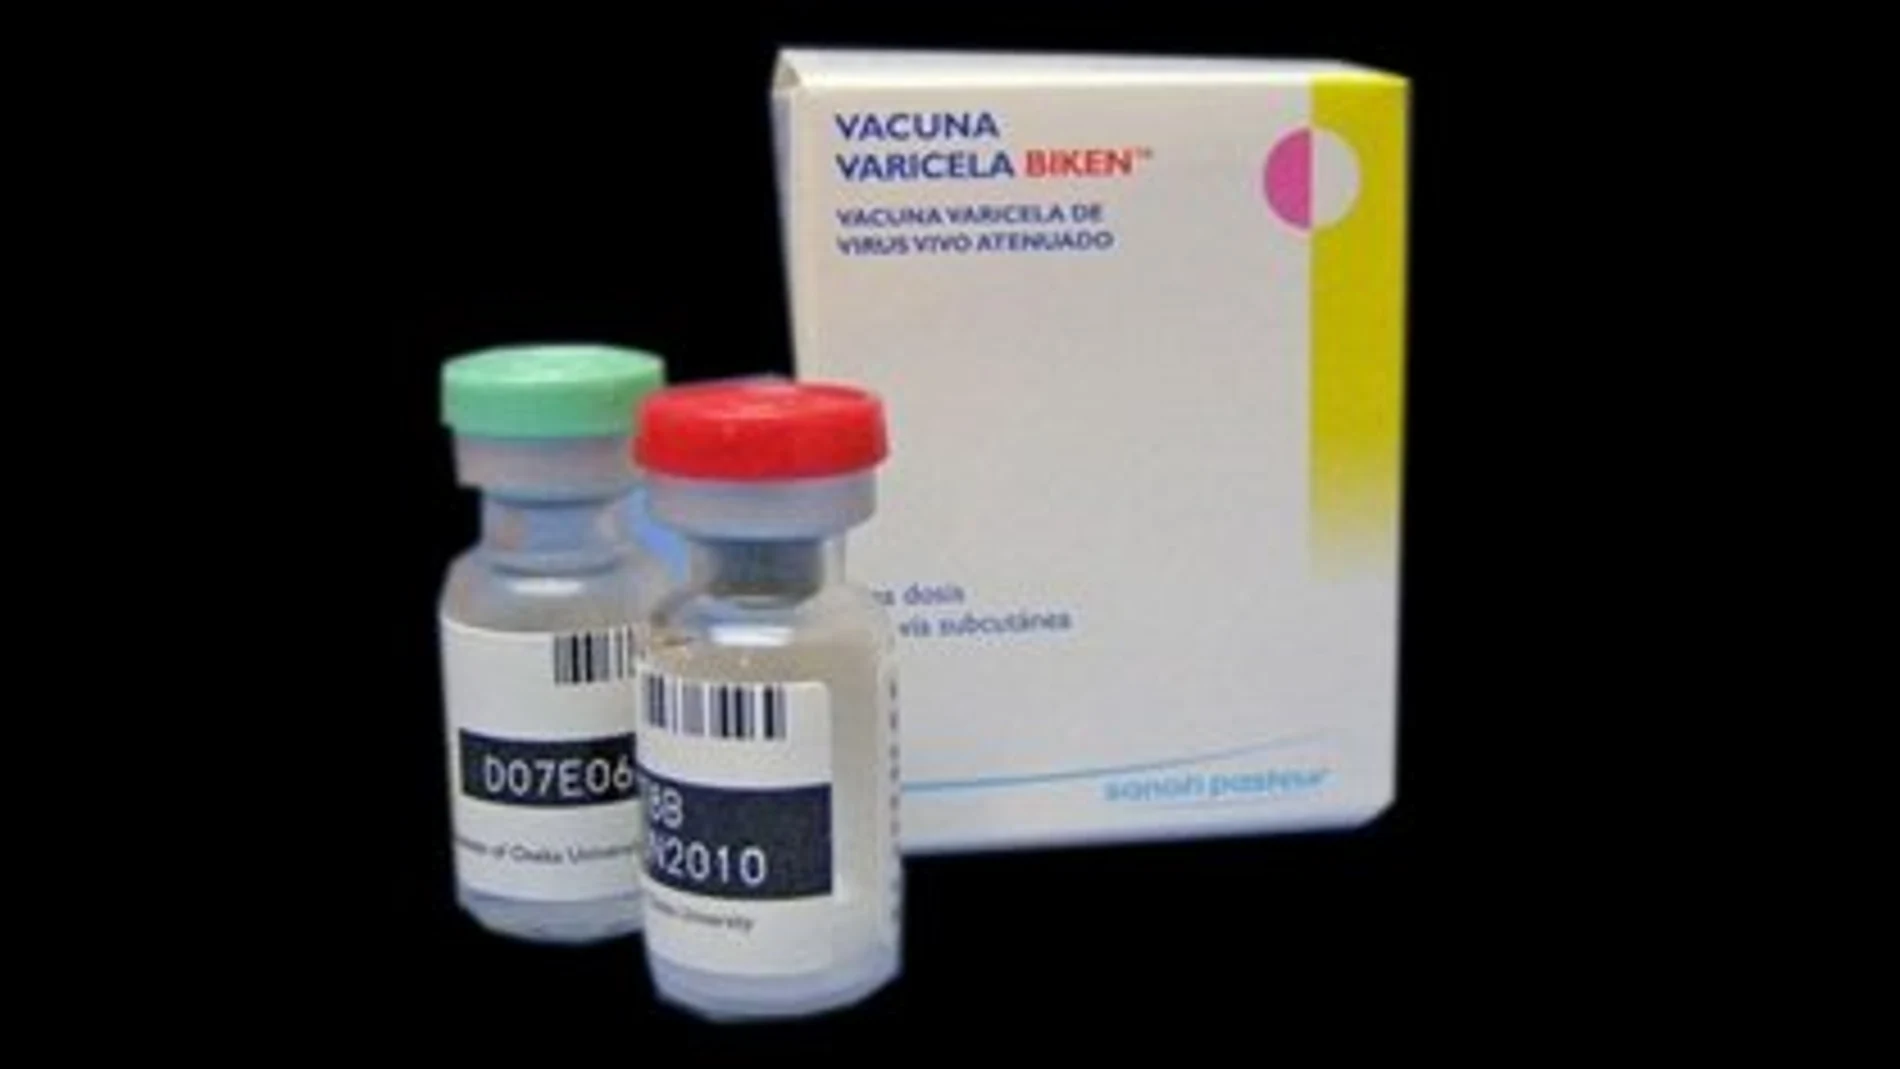 Imagen de la vacuna de la varicela